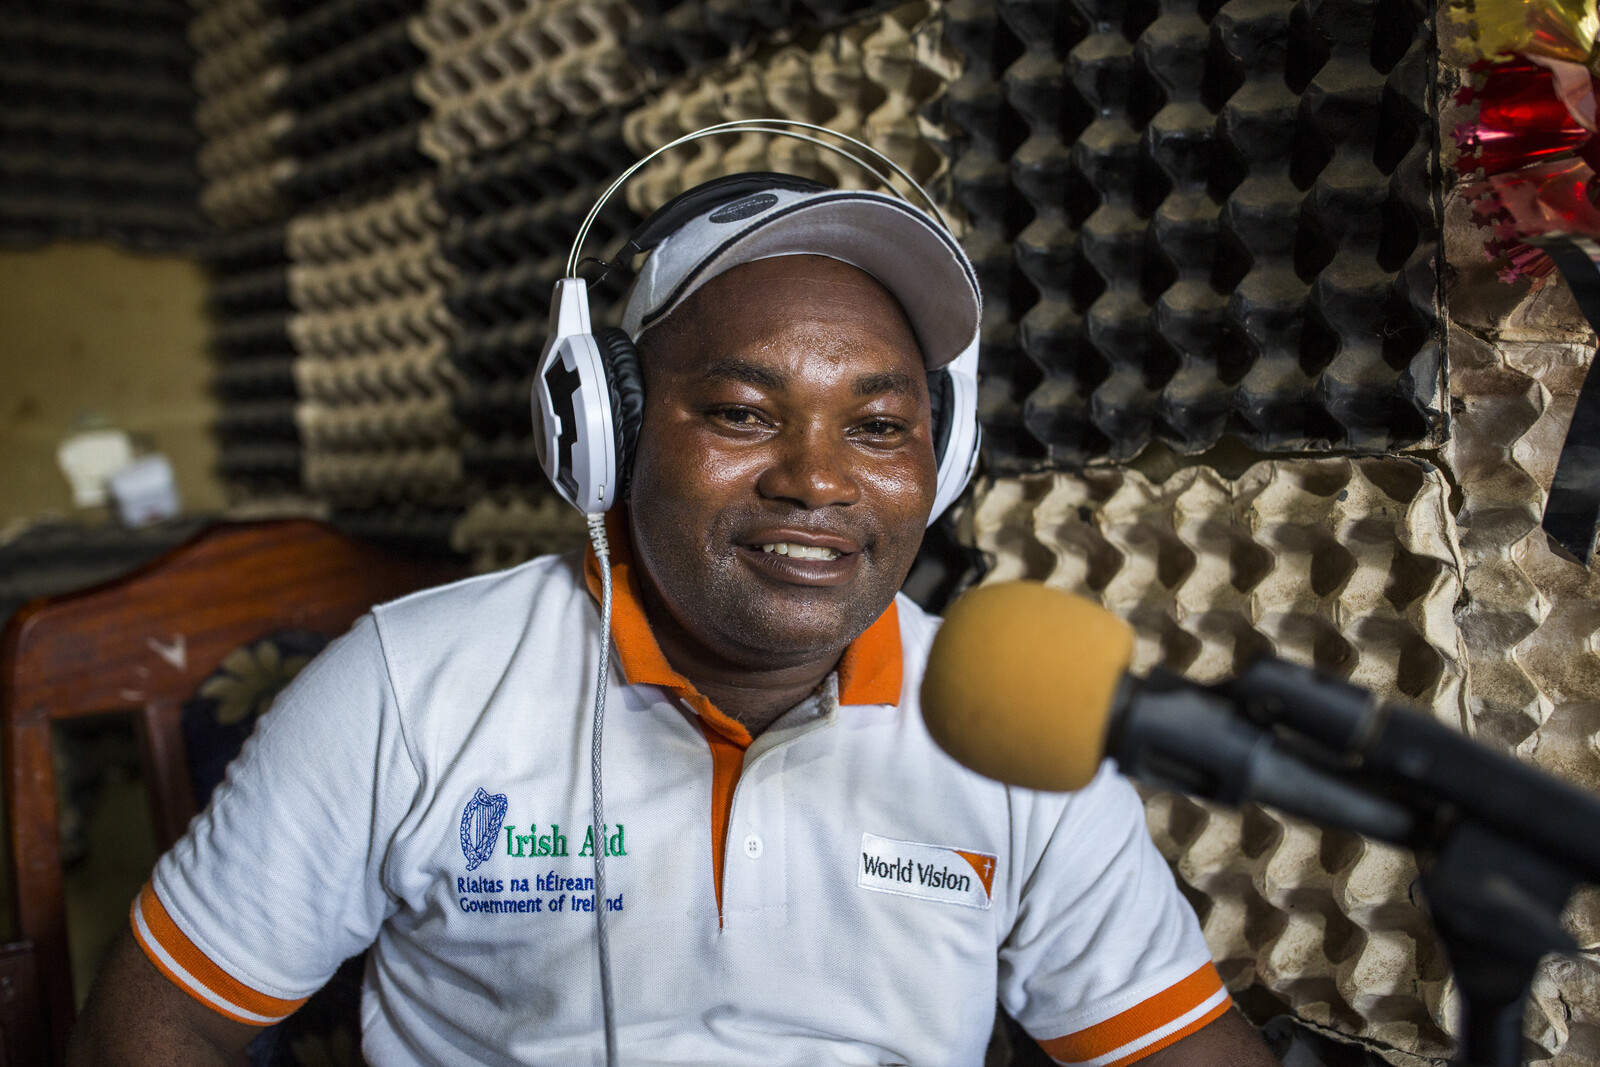 Per Radio wird die Bevölkerung im Kongo über Ebola aufgeklärt